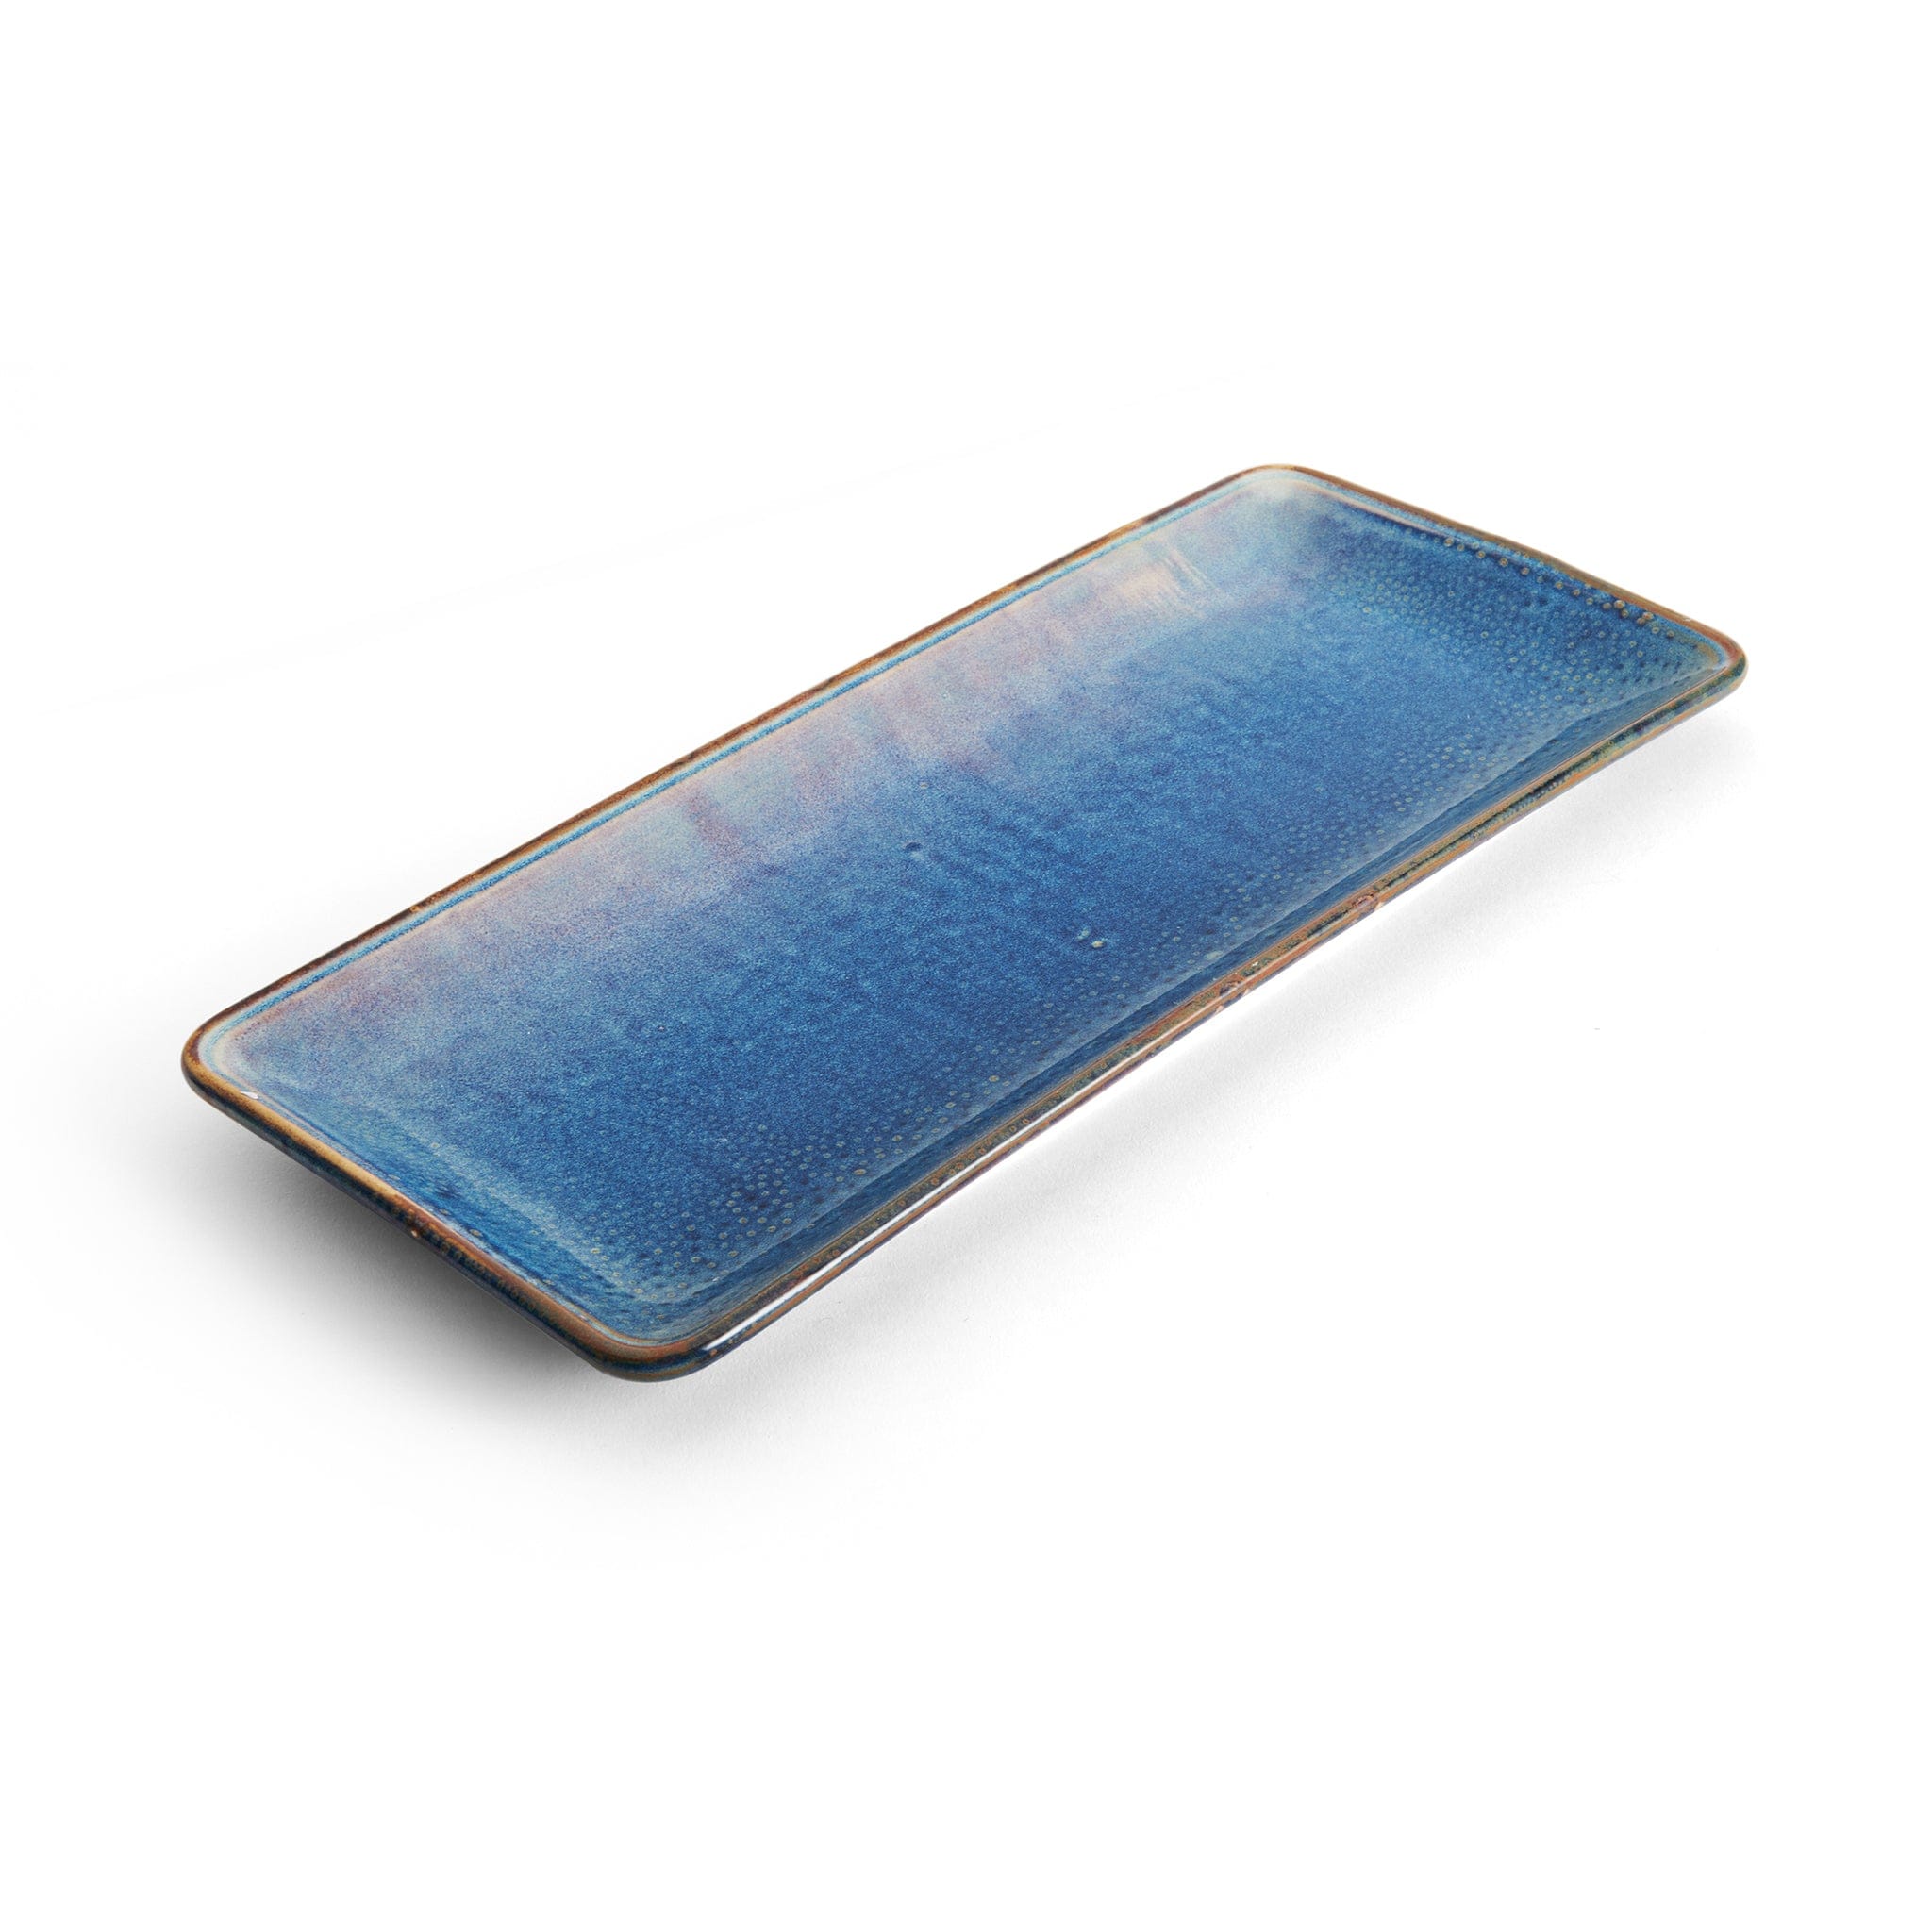 Starlit Porcelain Rectangular Platter 14x6" Blue